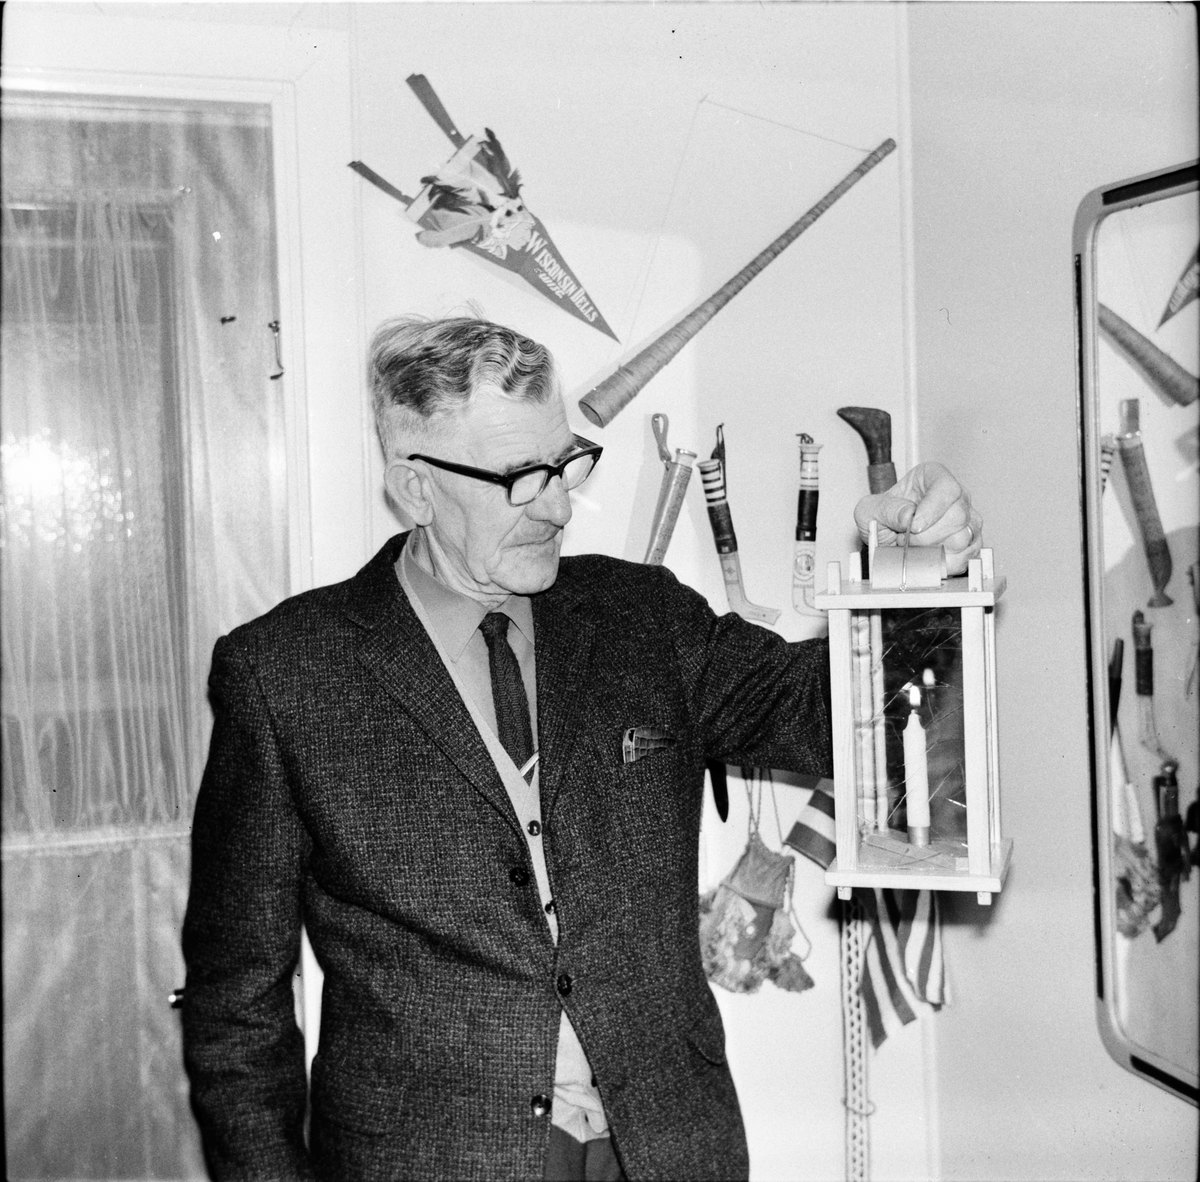 Arbrå,
Johan Asplin med stallykta,
23 December 1967